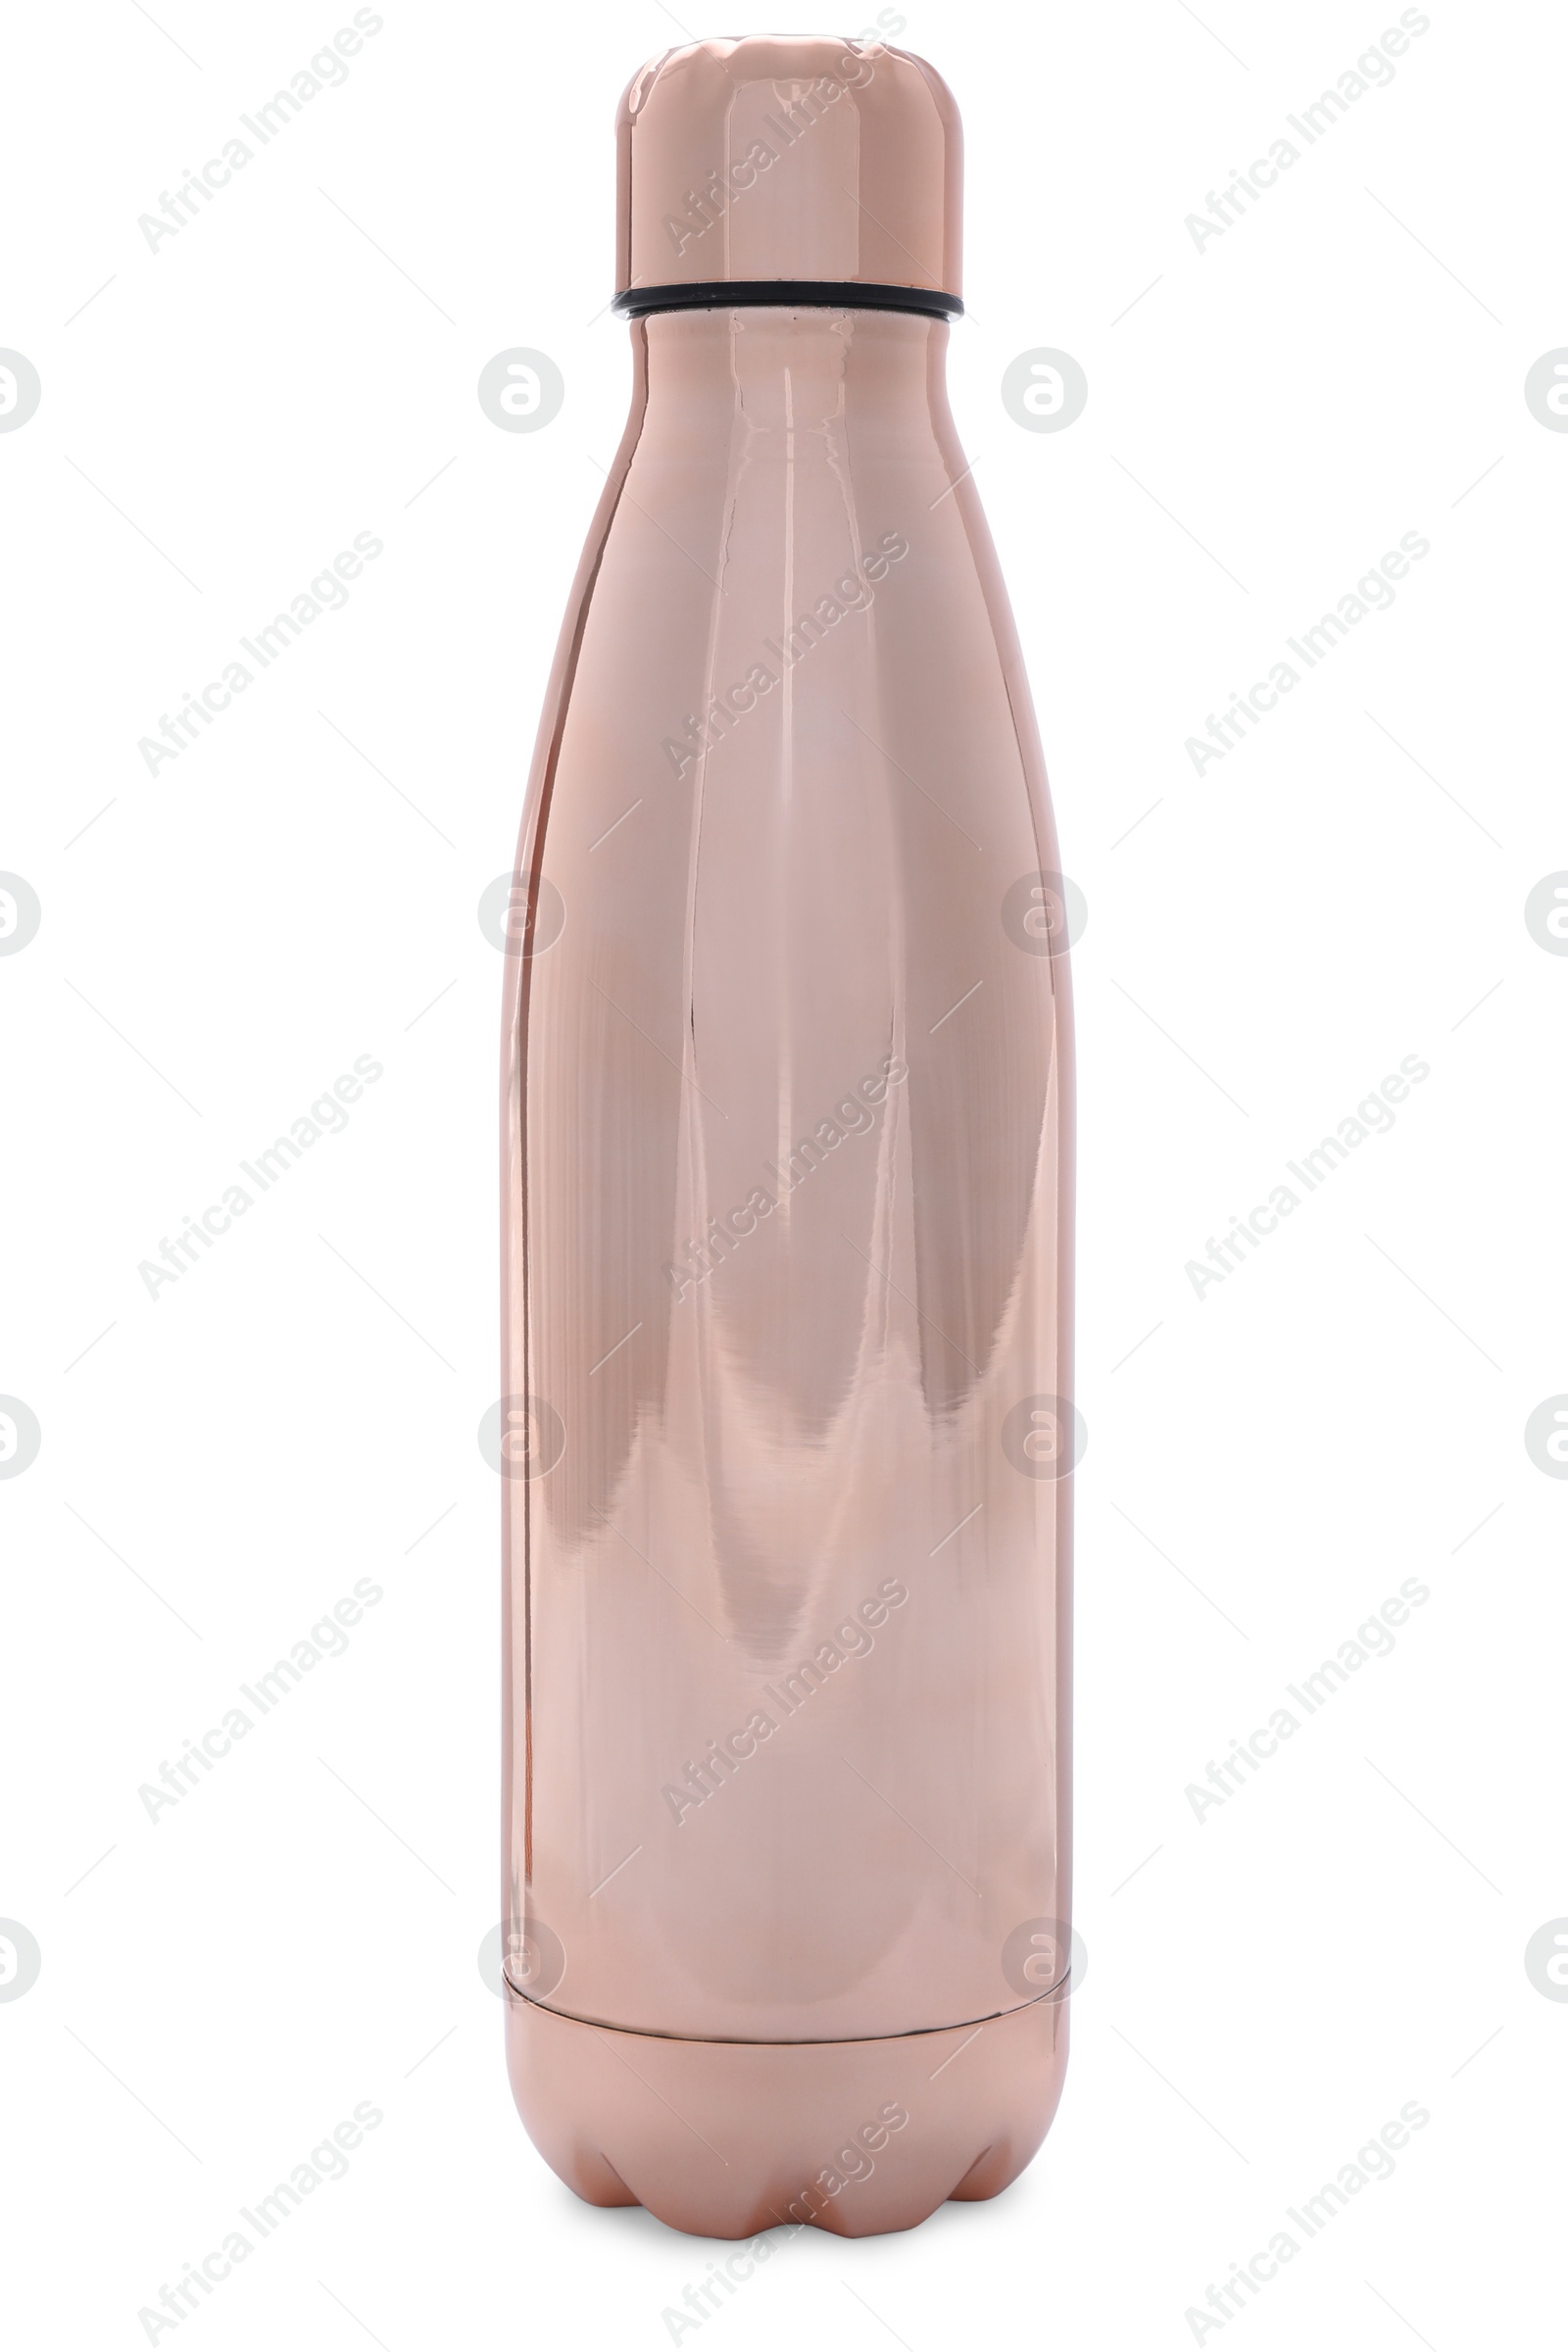 Photo of Stylish shiny thermo bottle isolated on white